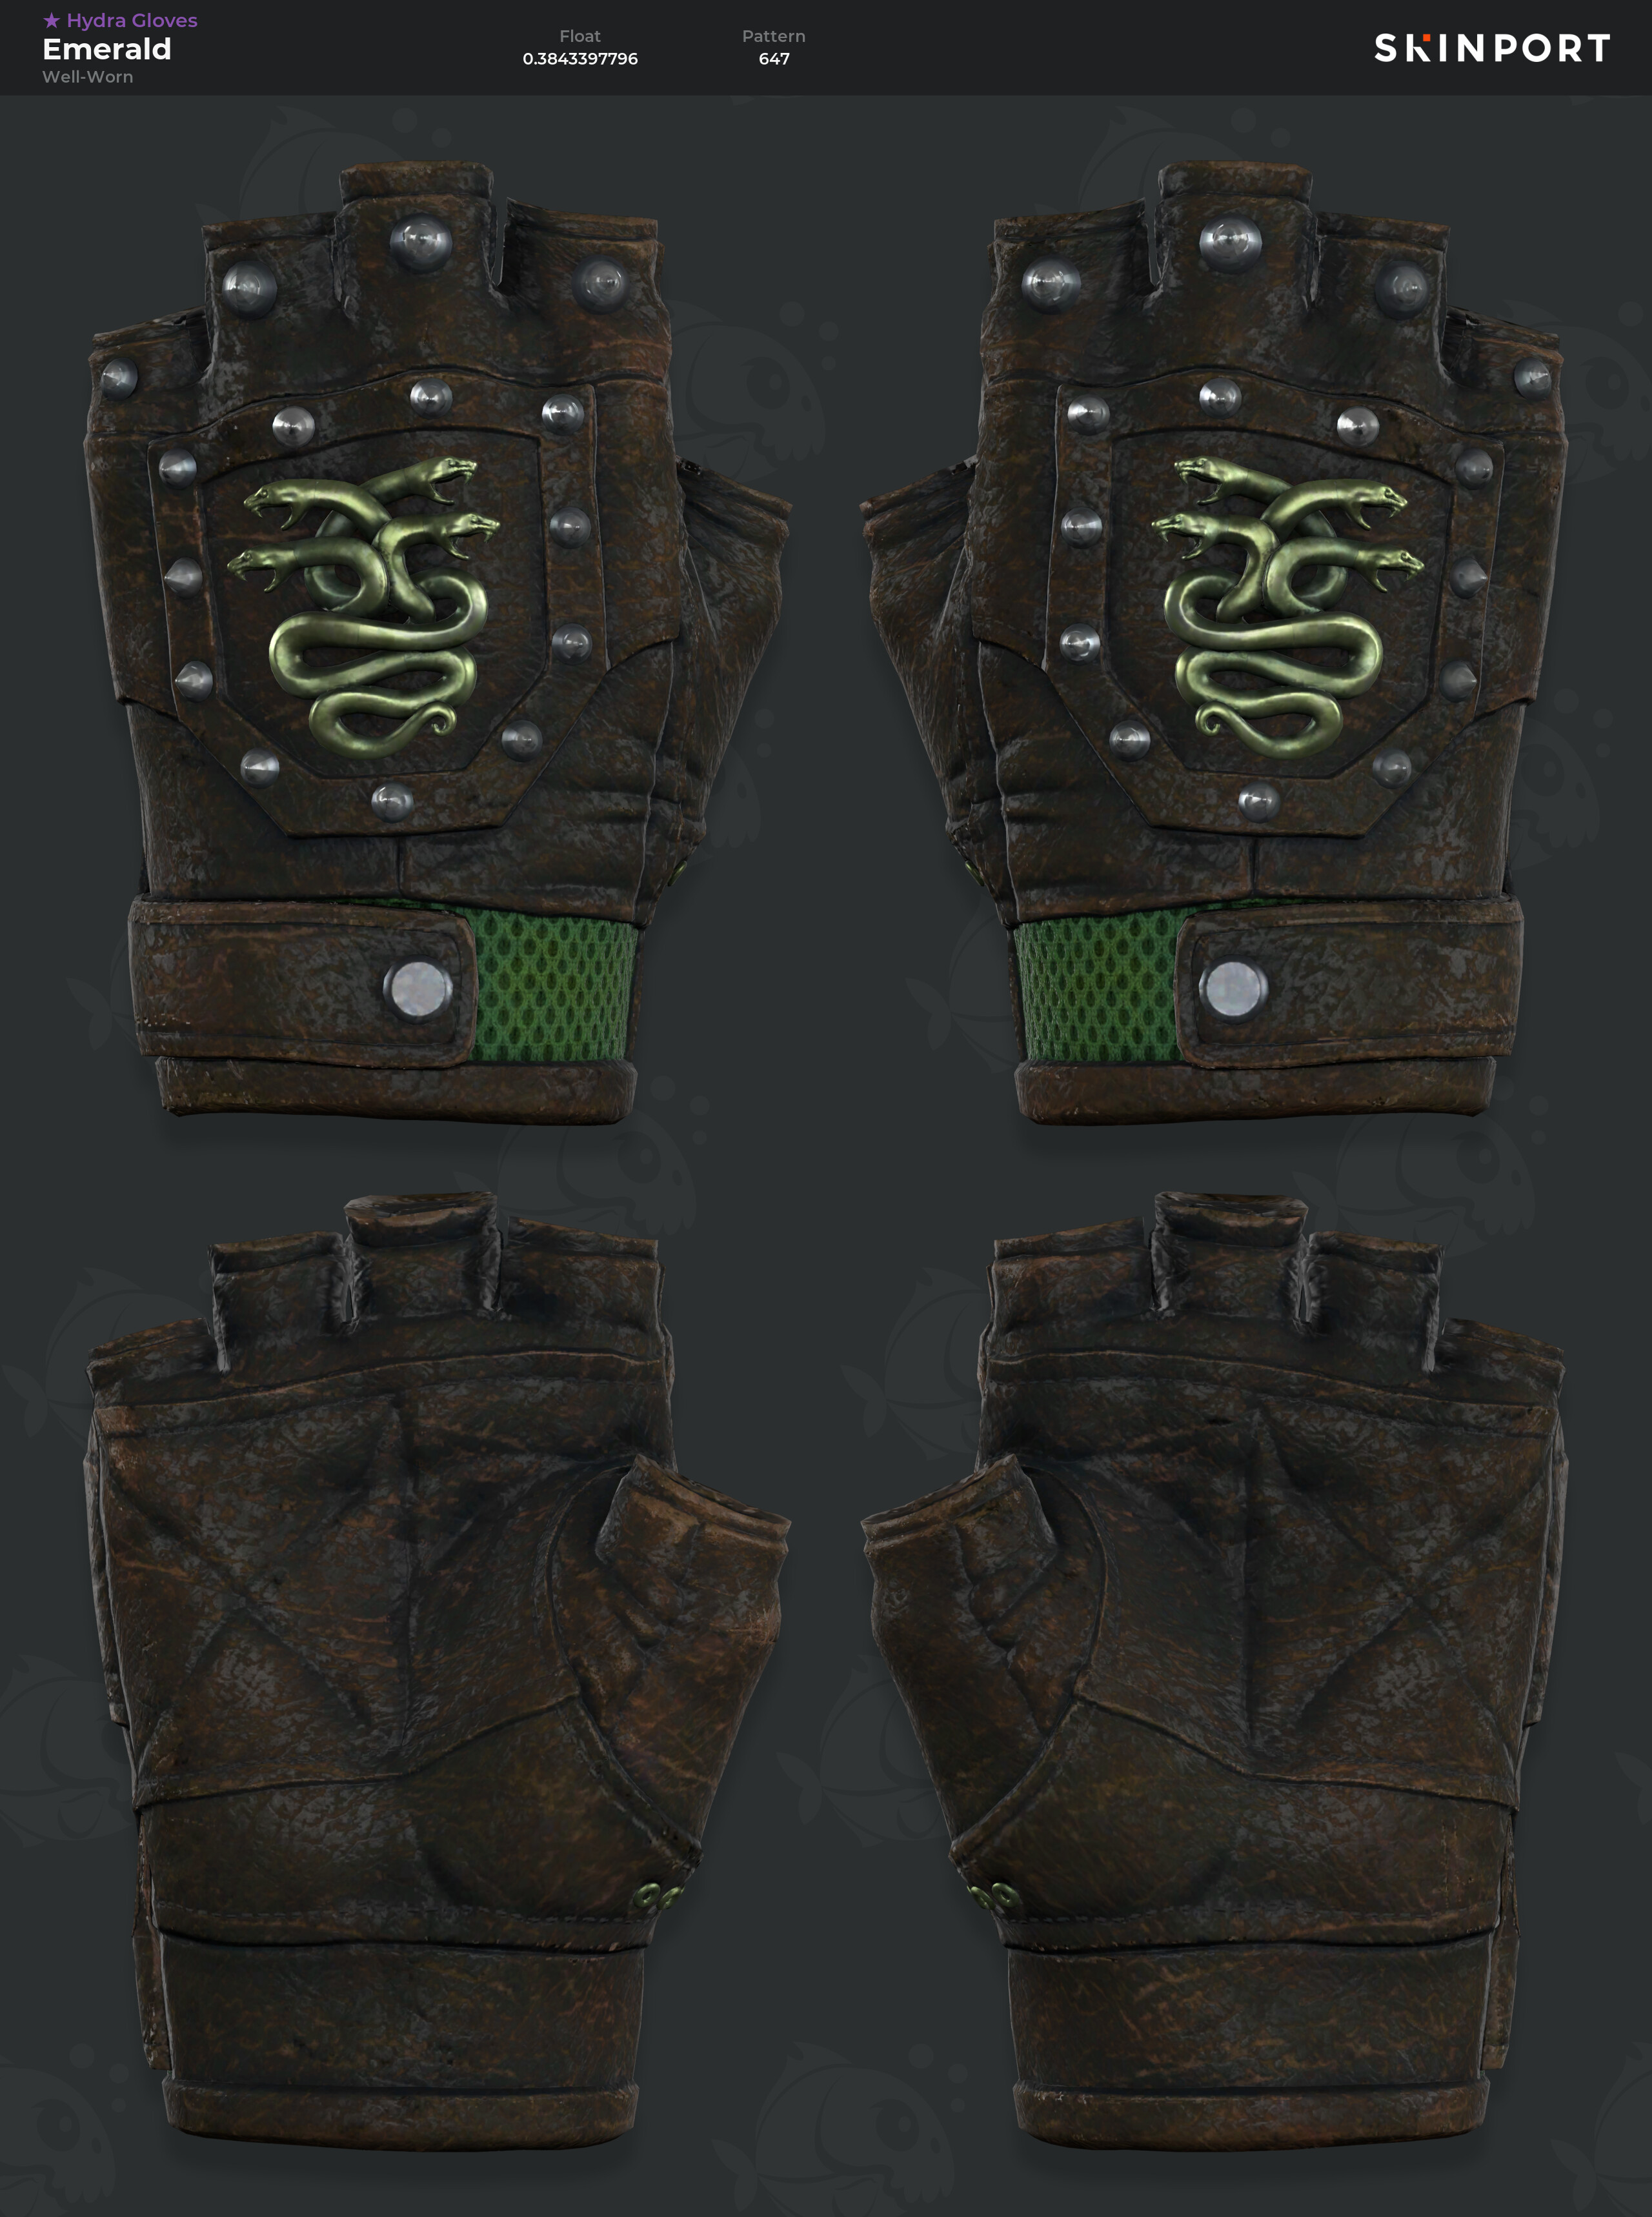 hydra gloves emerald well worn